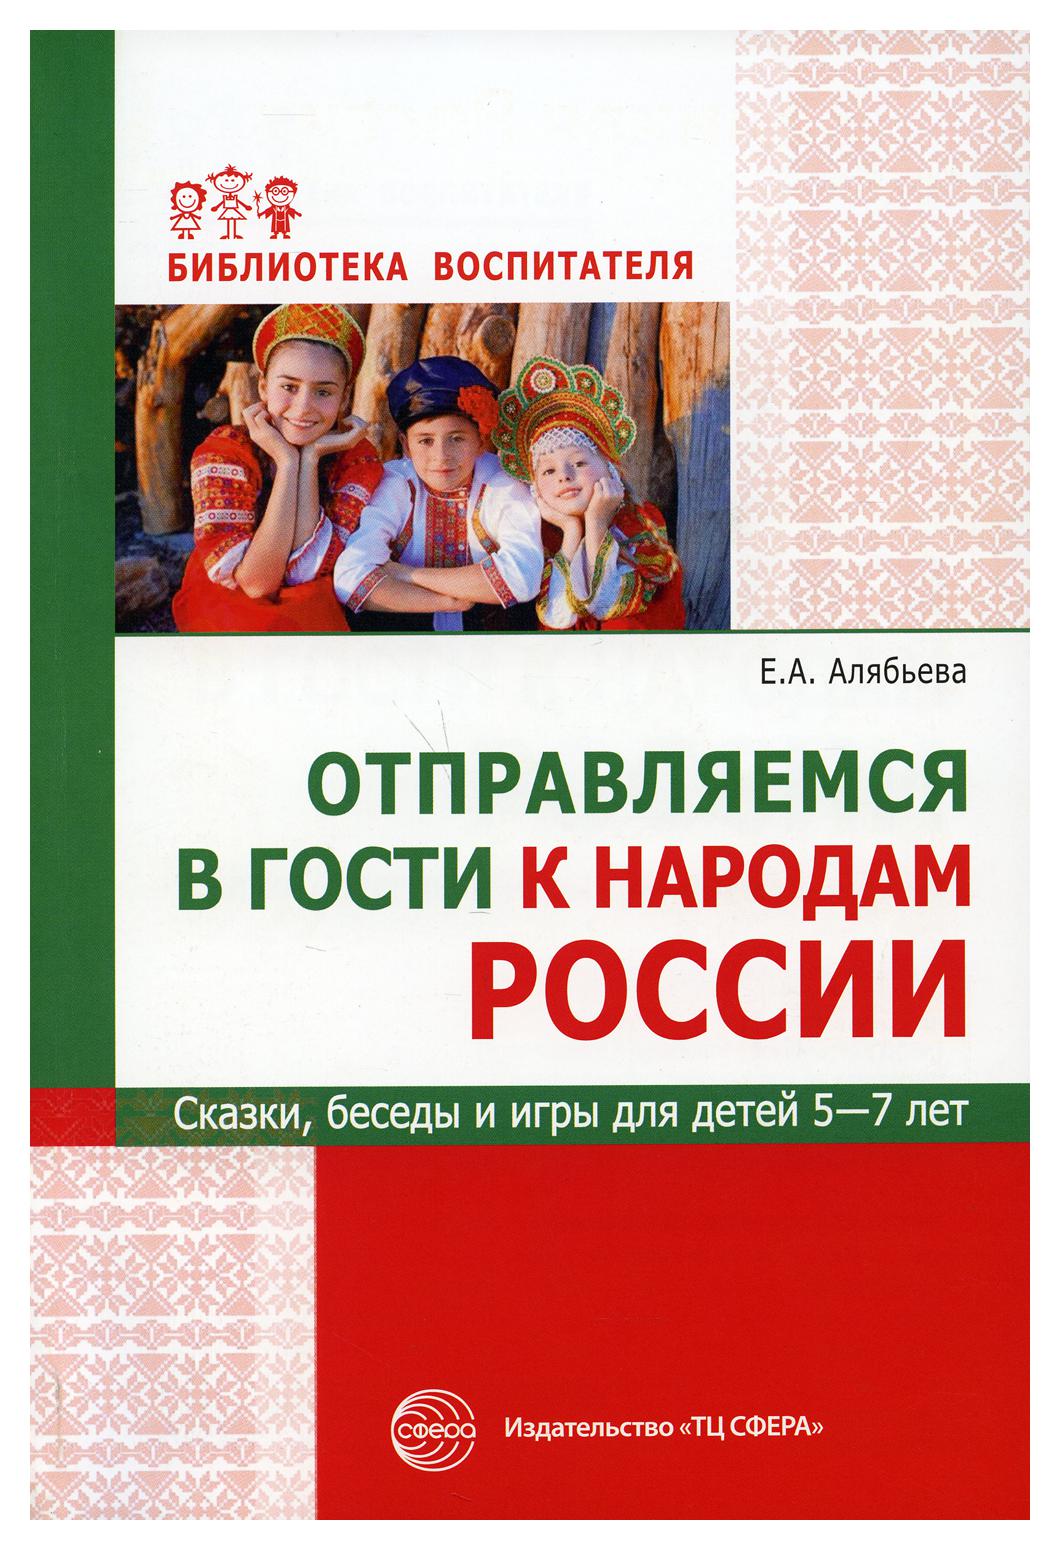 фото Книга отправляемся в гости к народам россии. сказки, беседы и игры для детей 5-7 лет творческий центр сфера